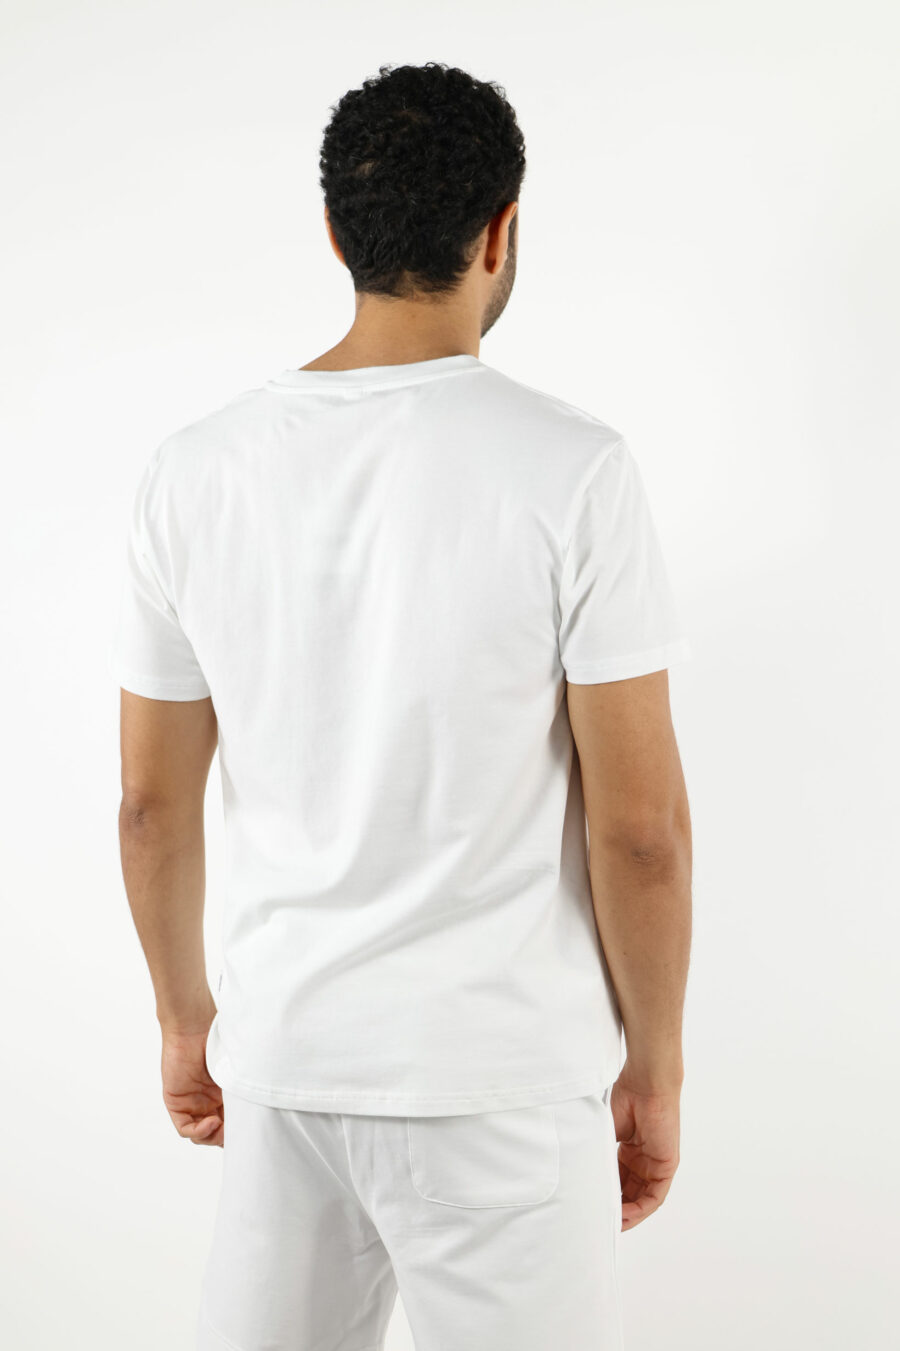 Camiseta blanca con minilogo oso "underbear" en goma negro - 111032